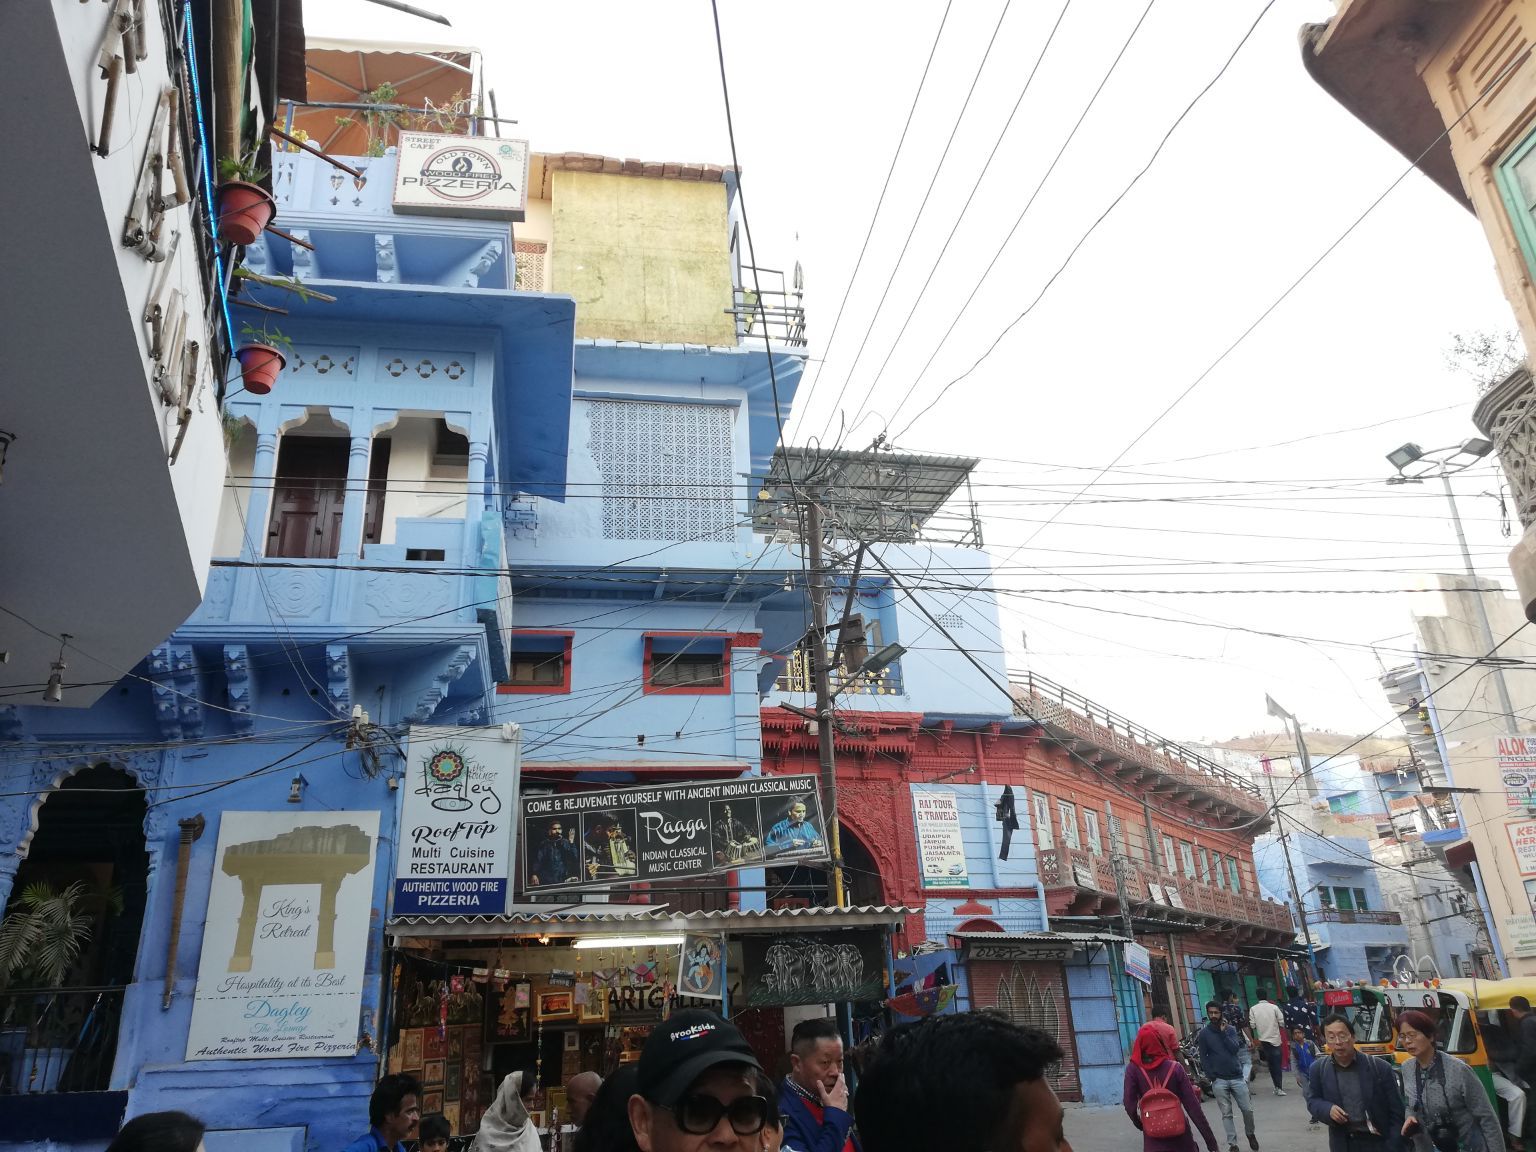 印度•焦特普尔  焦特普尔的蓝白小镇  世界上不止只有摩洛哥有蓝白小镇，印度也有蓝白小镇。